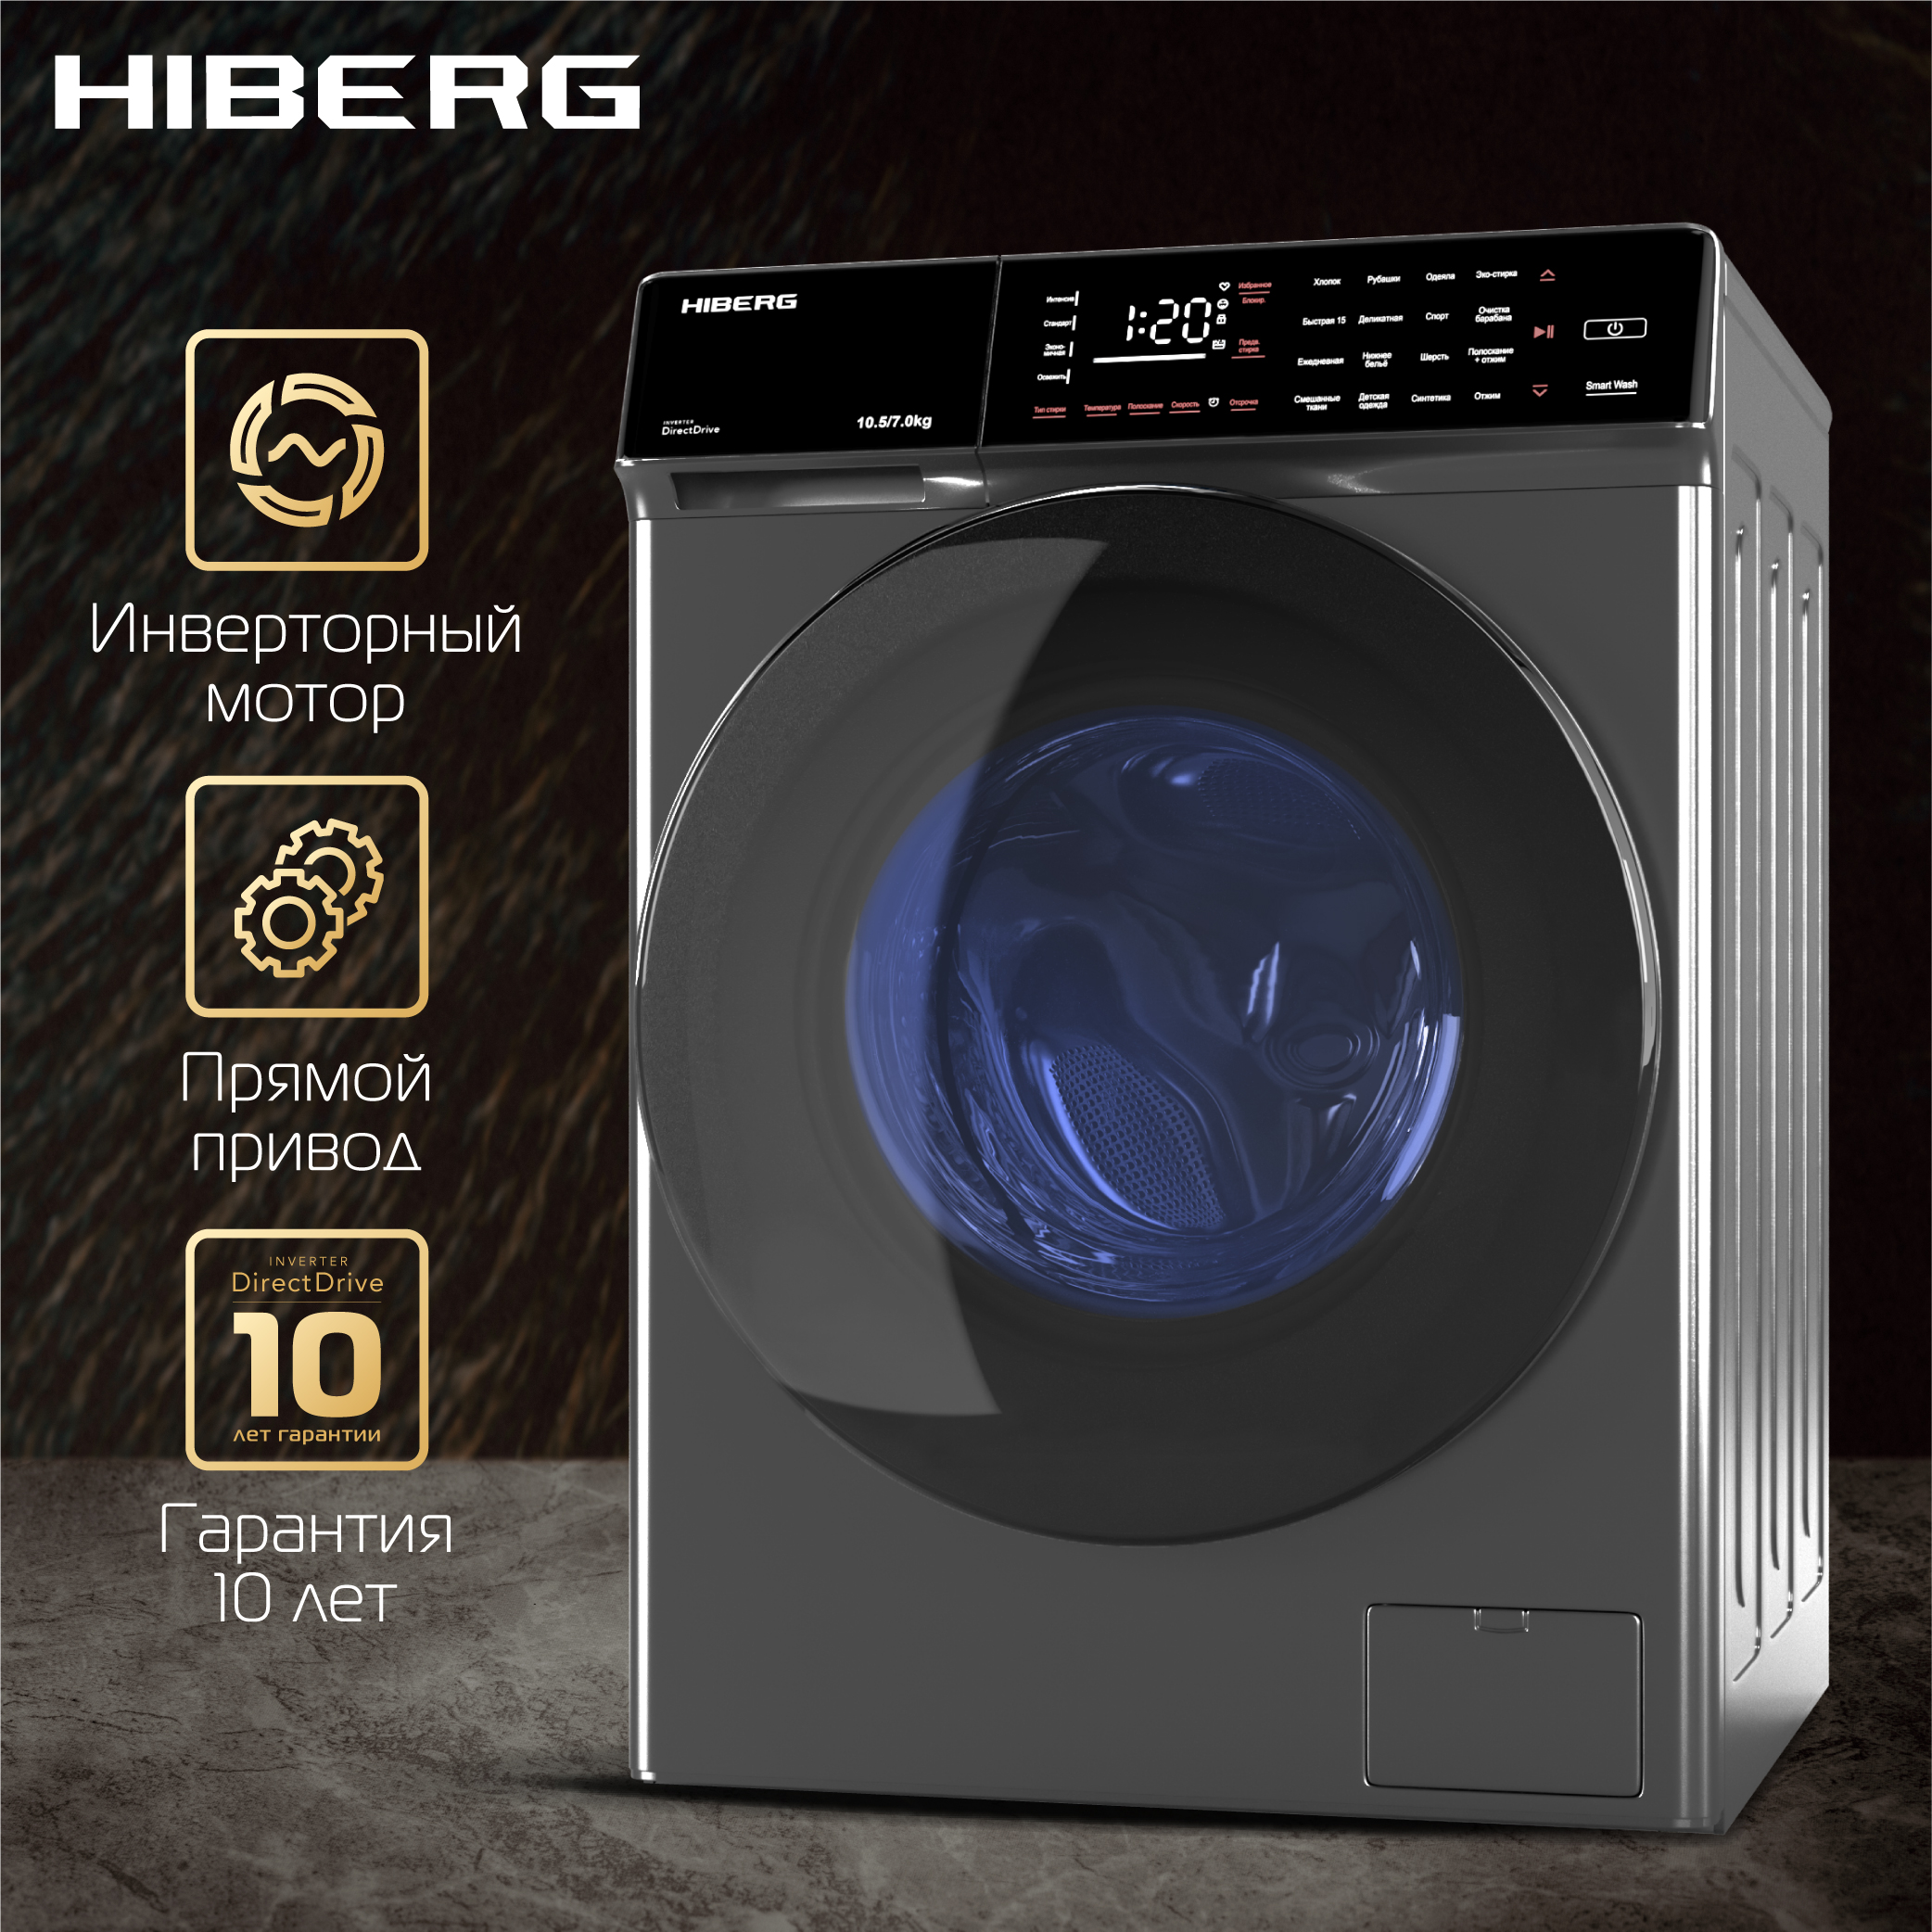 Стиральная машина Hiberg i-DDQ9 - 10714 Sd серебристый стиральная машина hiberg i ddq9 10714 sd серебристый